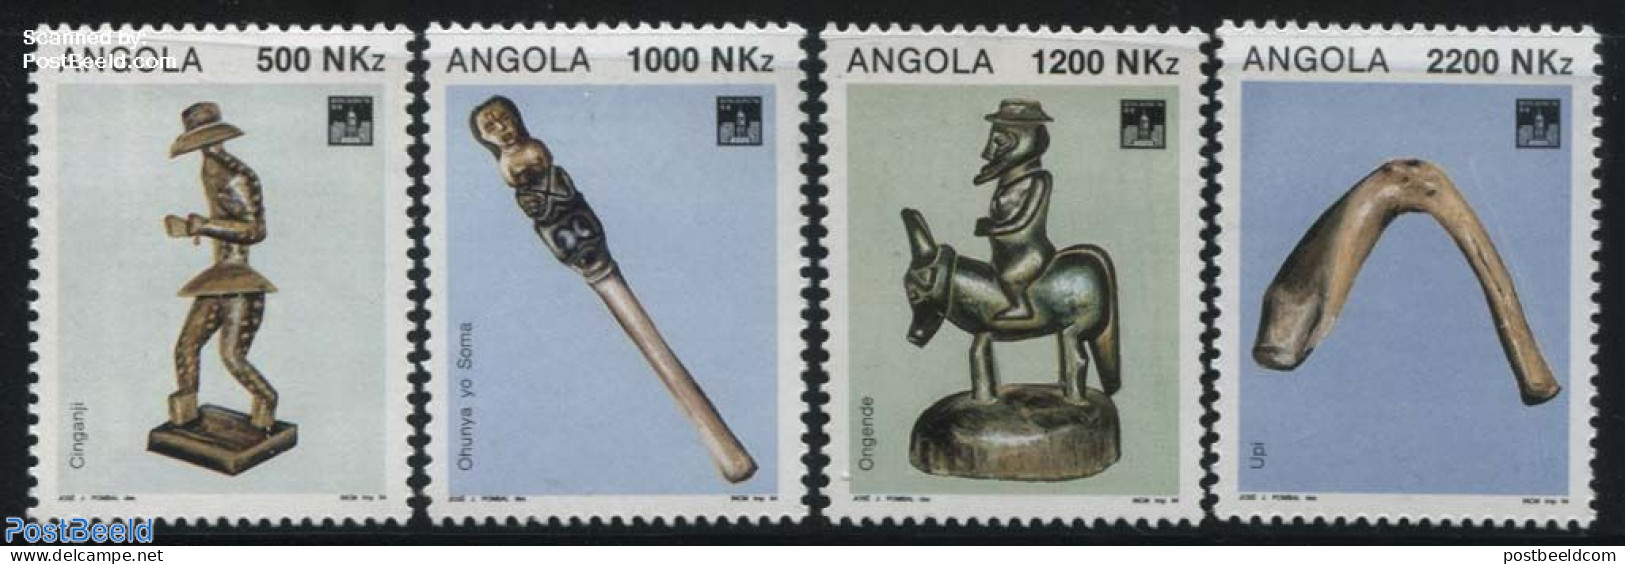 Angola 1994 Hong Kong 94 4v, Mint NH, Philately - Art - Art & Antique Objects - Sculpture - Skulpturen